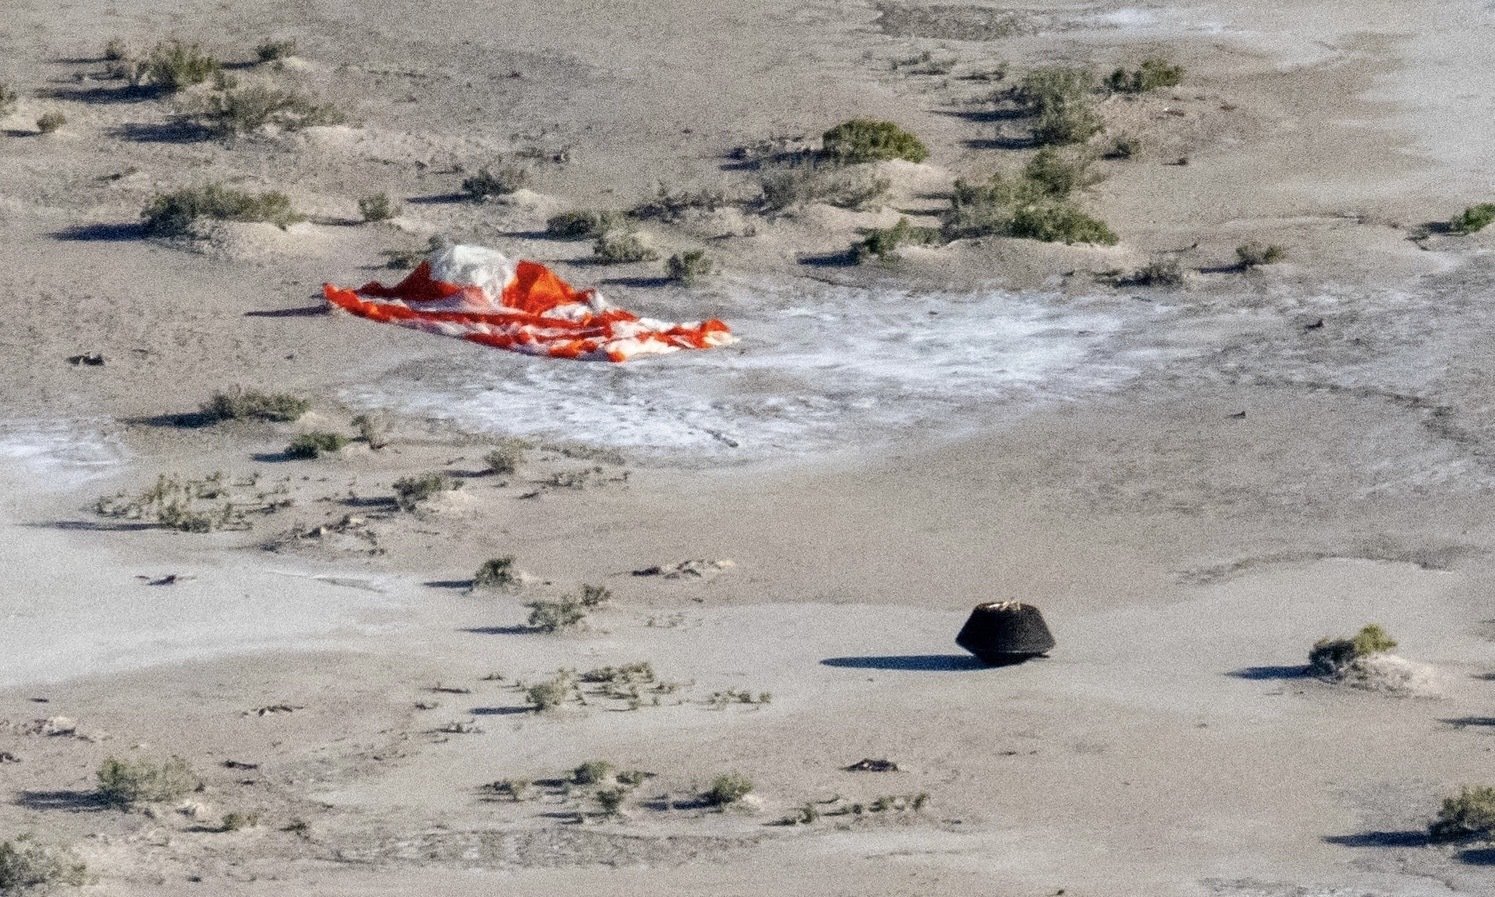 OSIRIS-Rex capsule landing in the desert